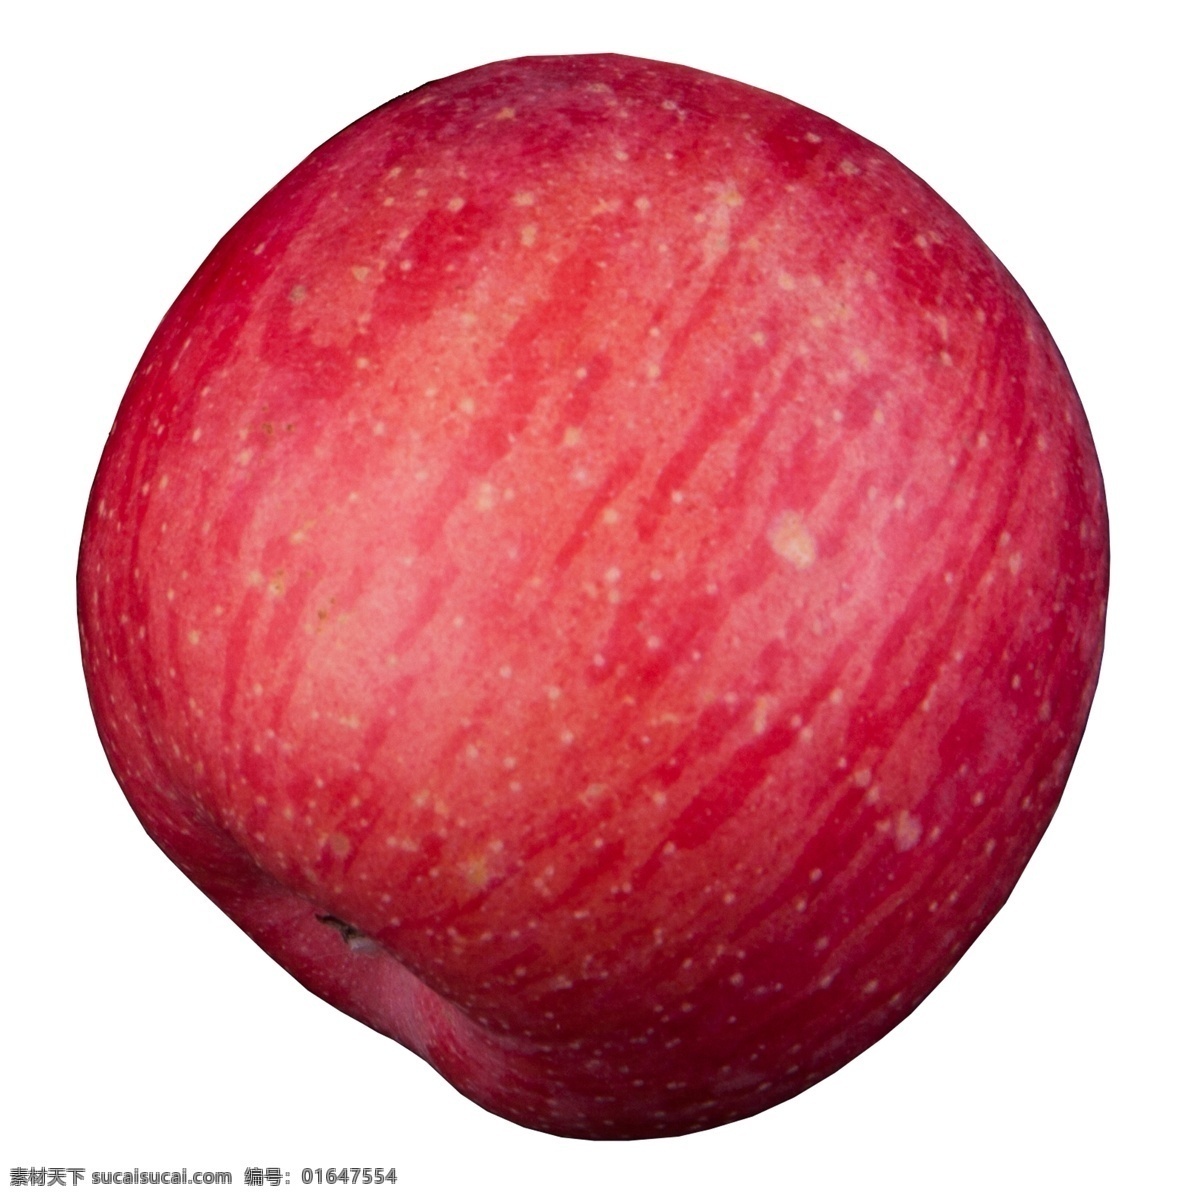 实拍 果林 果树 一个 水果 苹果 大红苹果 红富士苹果 大个红苹果 苹果果实 红色苹果果实